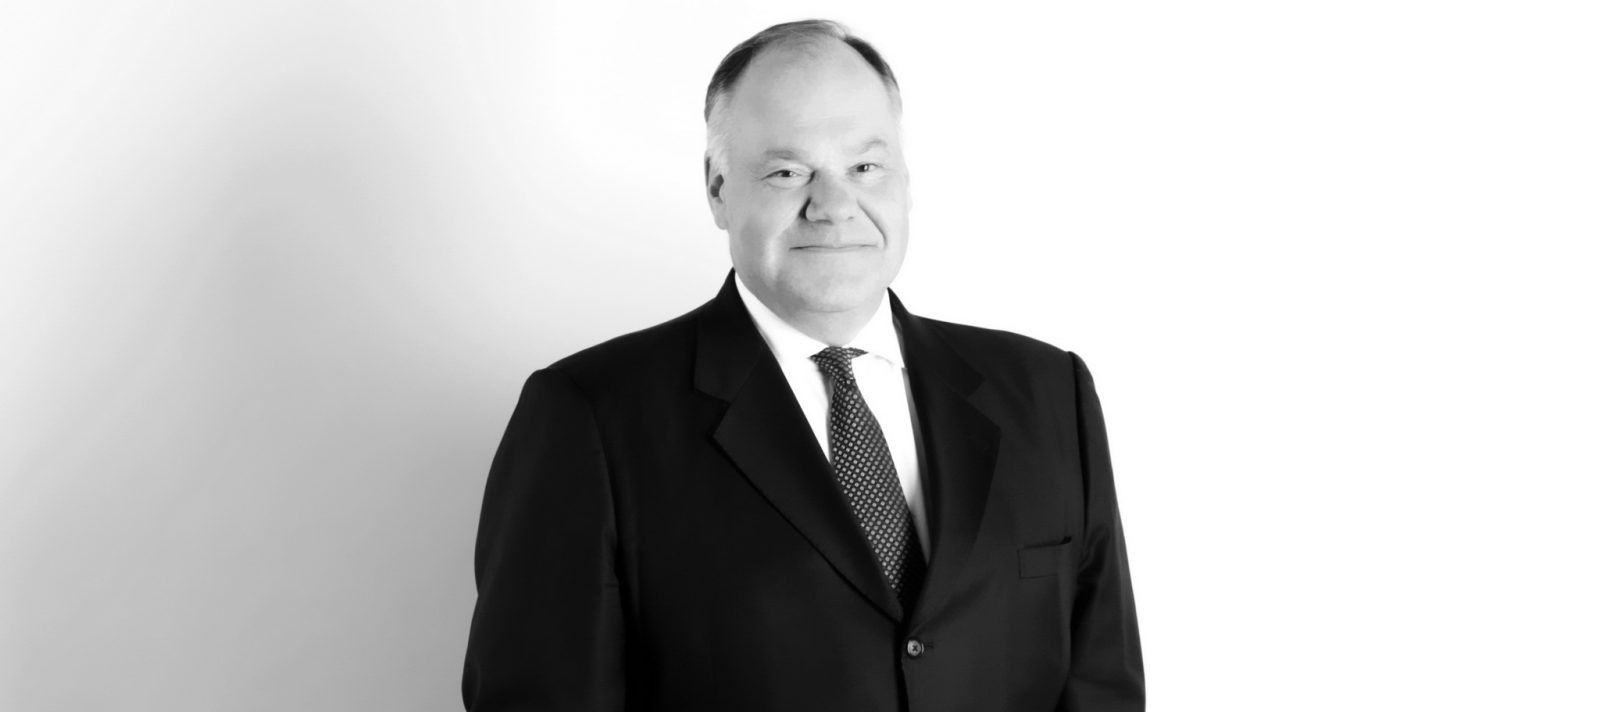 Матти Вуория, президент концерна Fortum (Финляндия), председатель Финско-Российской торговой палаты